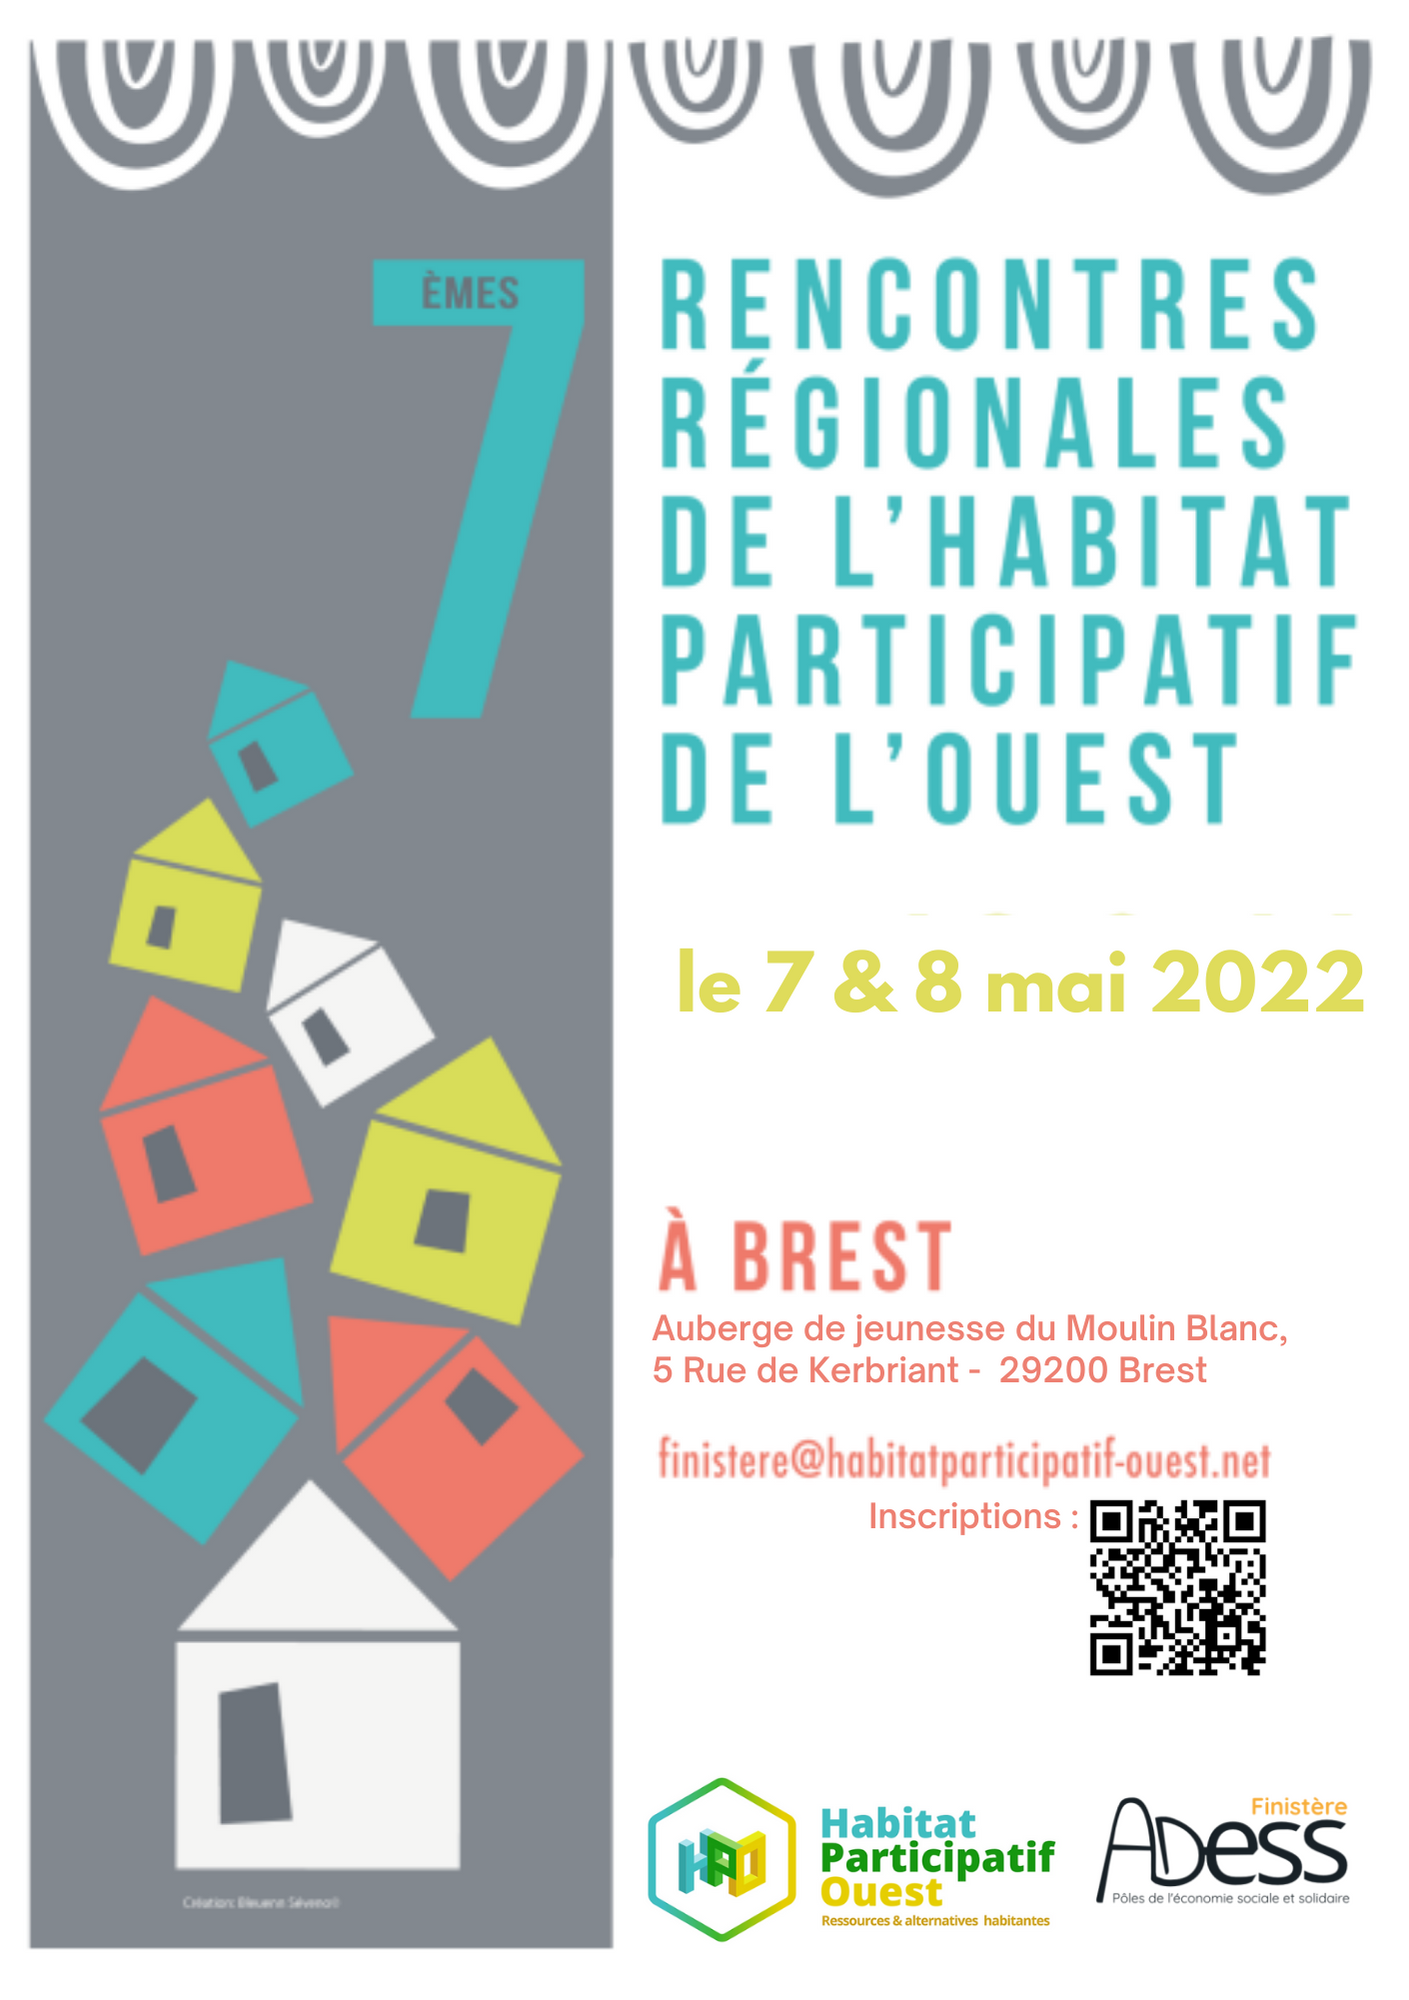 Les rencontres régionales de Brest